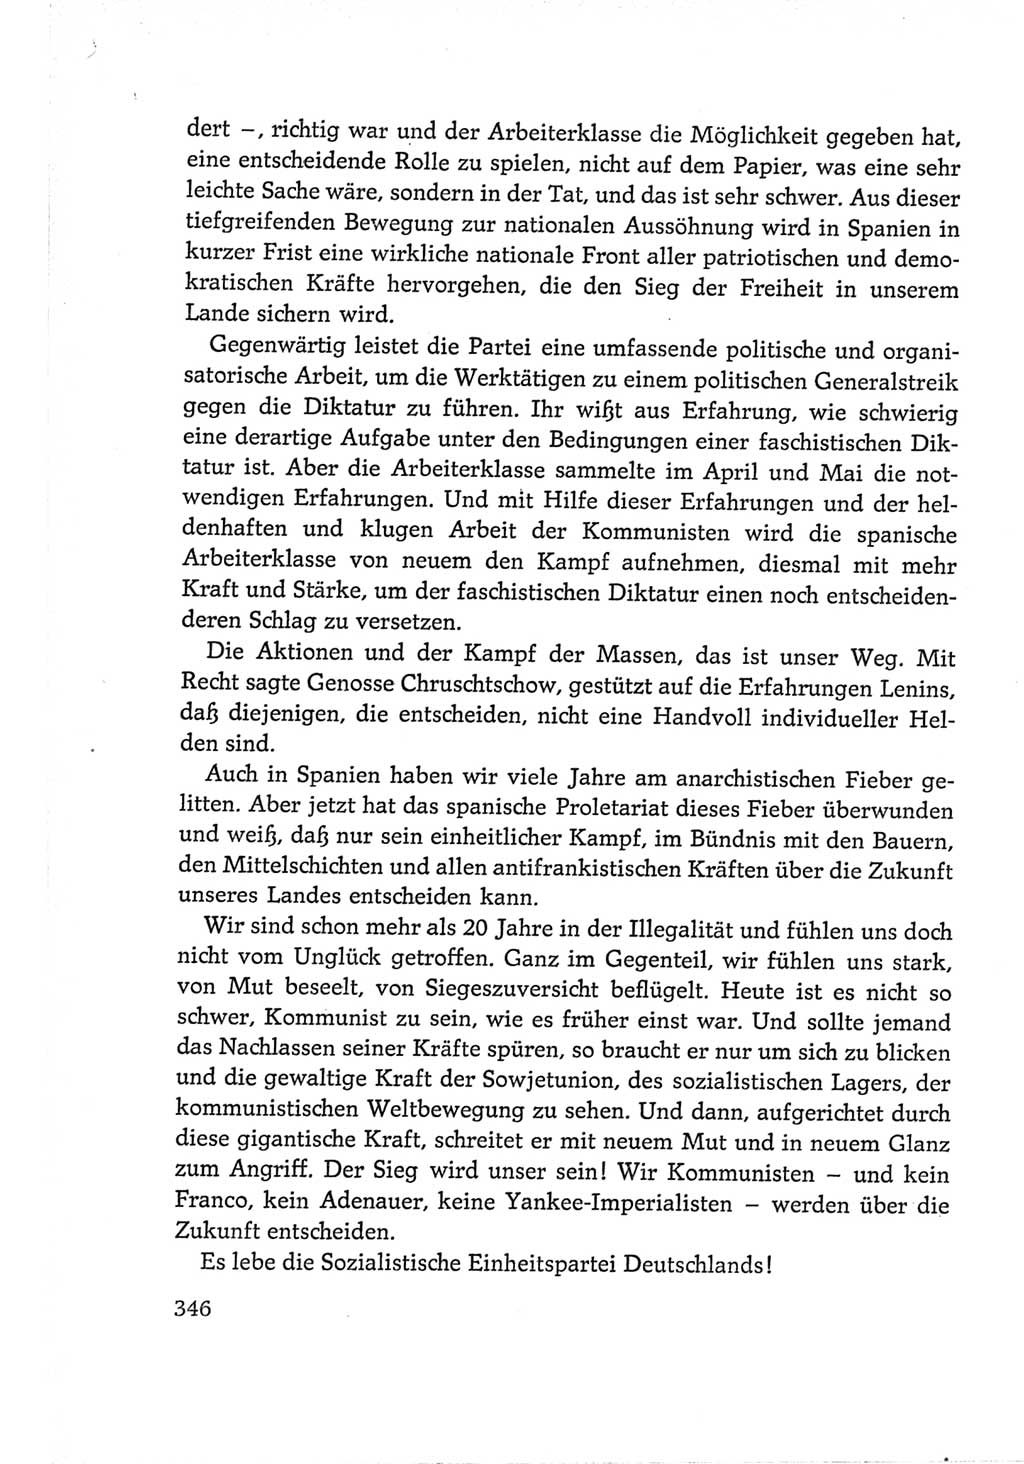 Protokoll der Verhandlungen des Ⅵ. Parteitages der Sozialistischen Einheitspartei Deutschlands (SED) [Deutsche Demokratische Republik (DDR)] 1963, Band Ⅱ, Seite 346 (Prot. Verh. Ⅵ. PT SED DDR 1963, Bd. Ⅱ, S. 346)